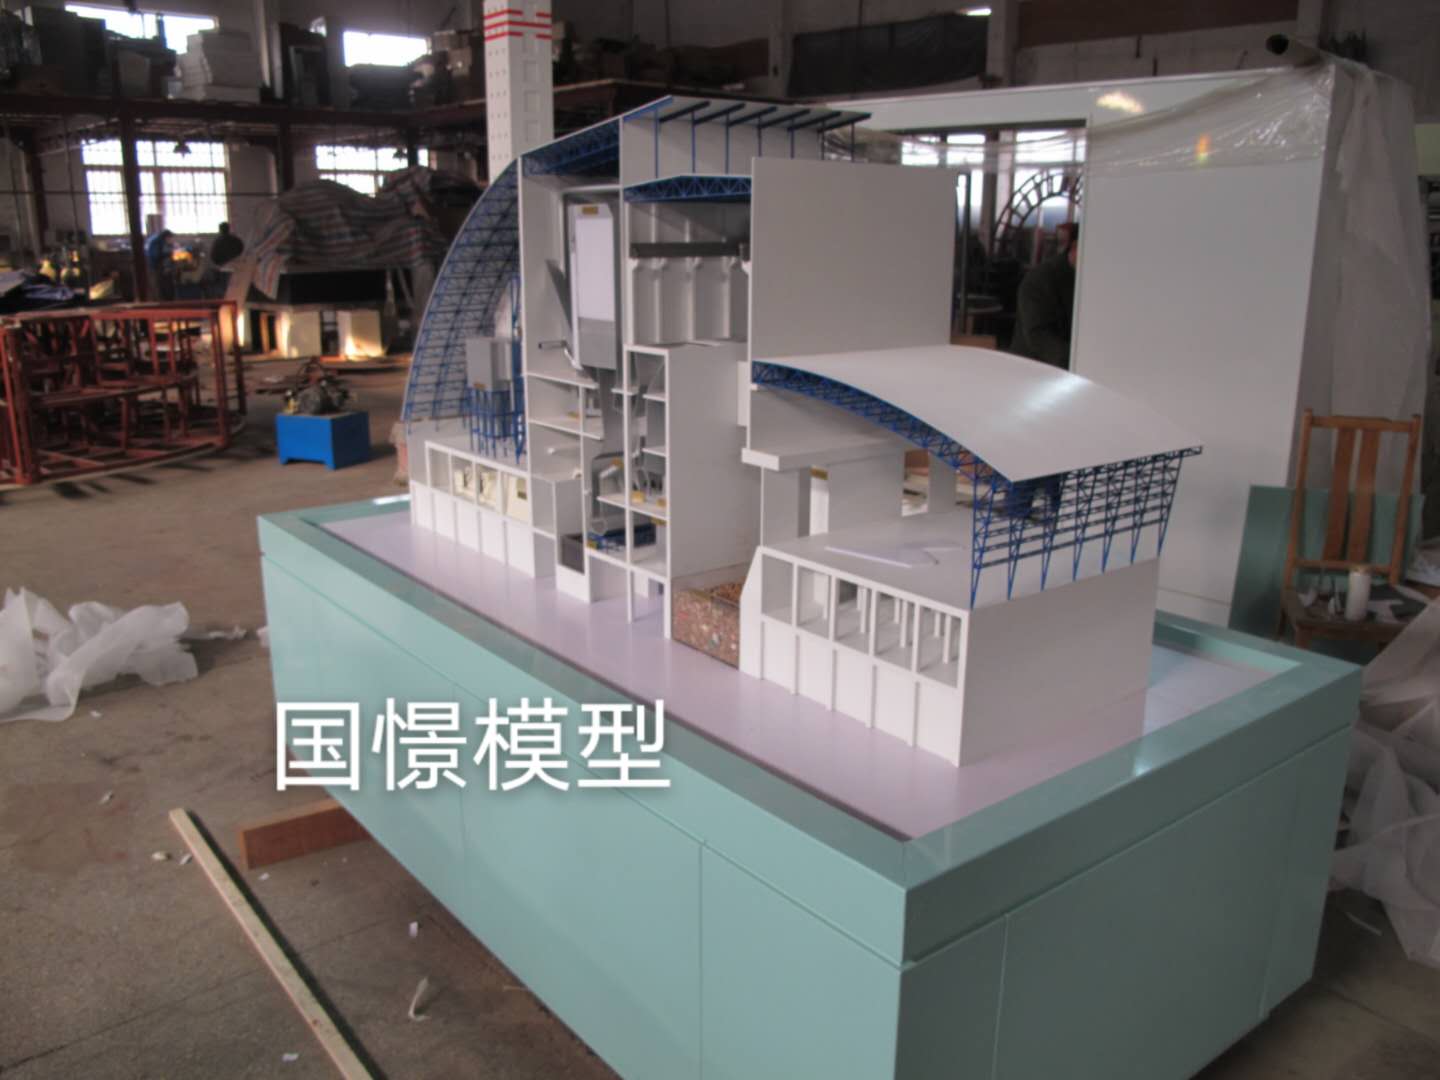 丰顺县工业模型